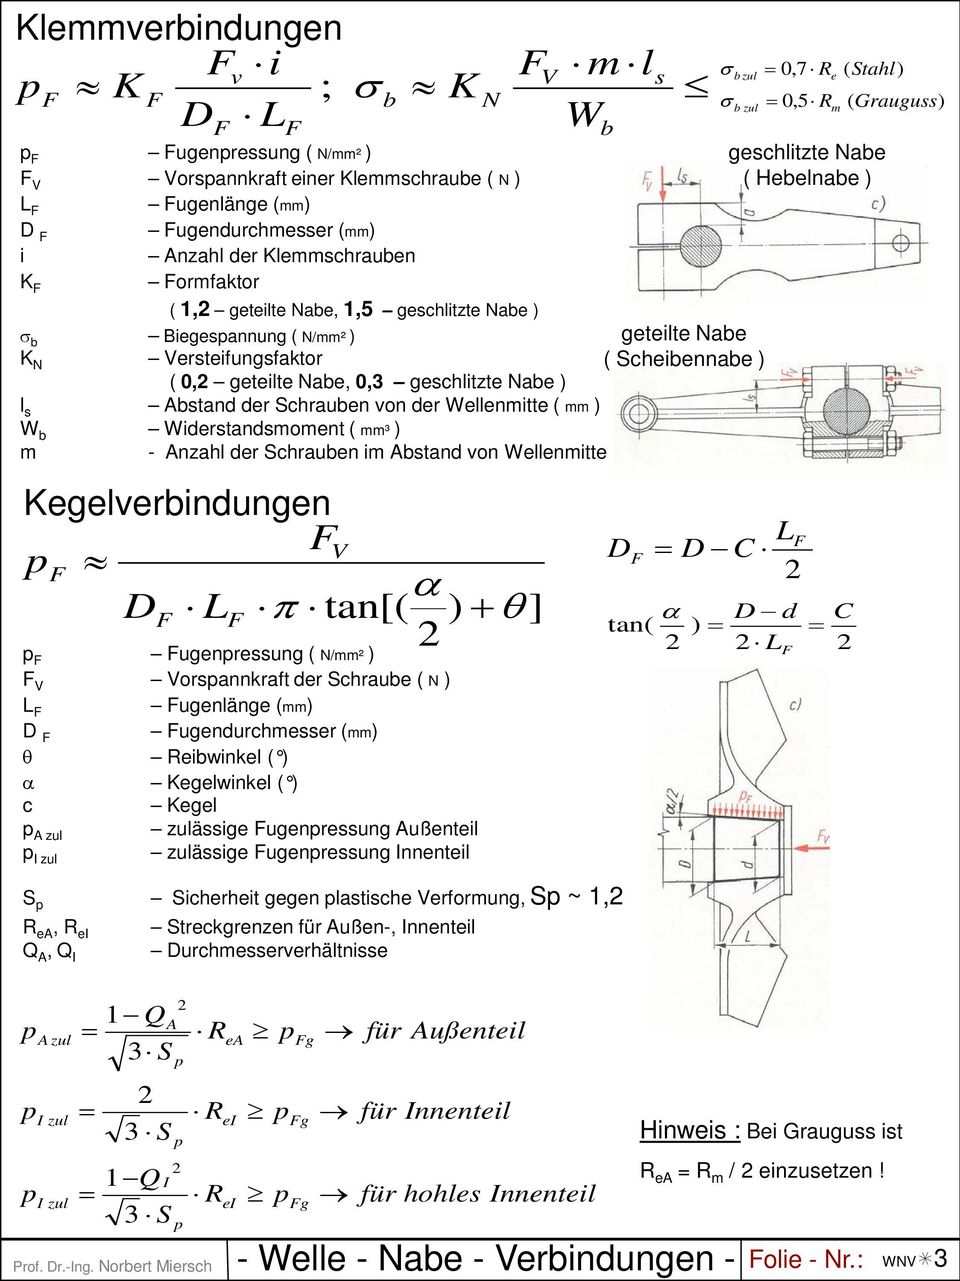 Widersandsmomen ( mm³ ) m - nzahl der Schrauben im bsand von Wellenmie Prof. r.-ng. Norber Miersch - Welle - Nabe - Verbindungen - olie - Nr.